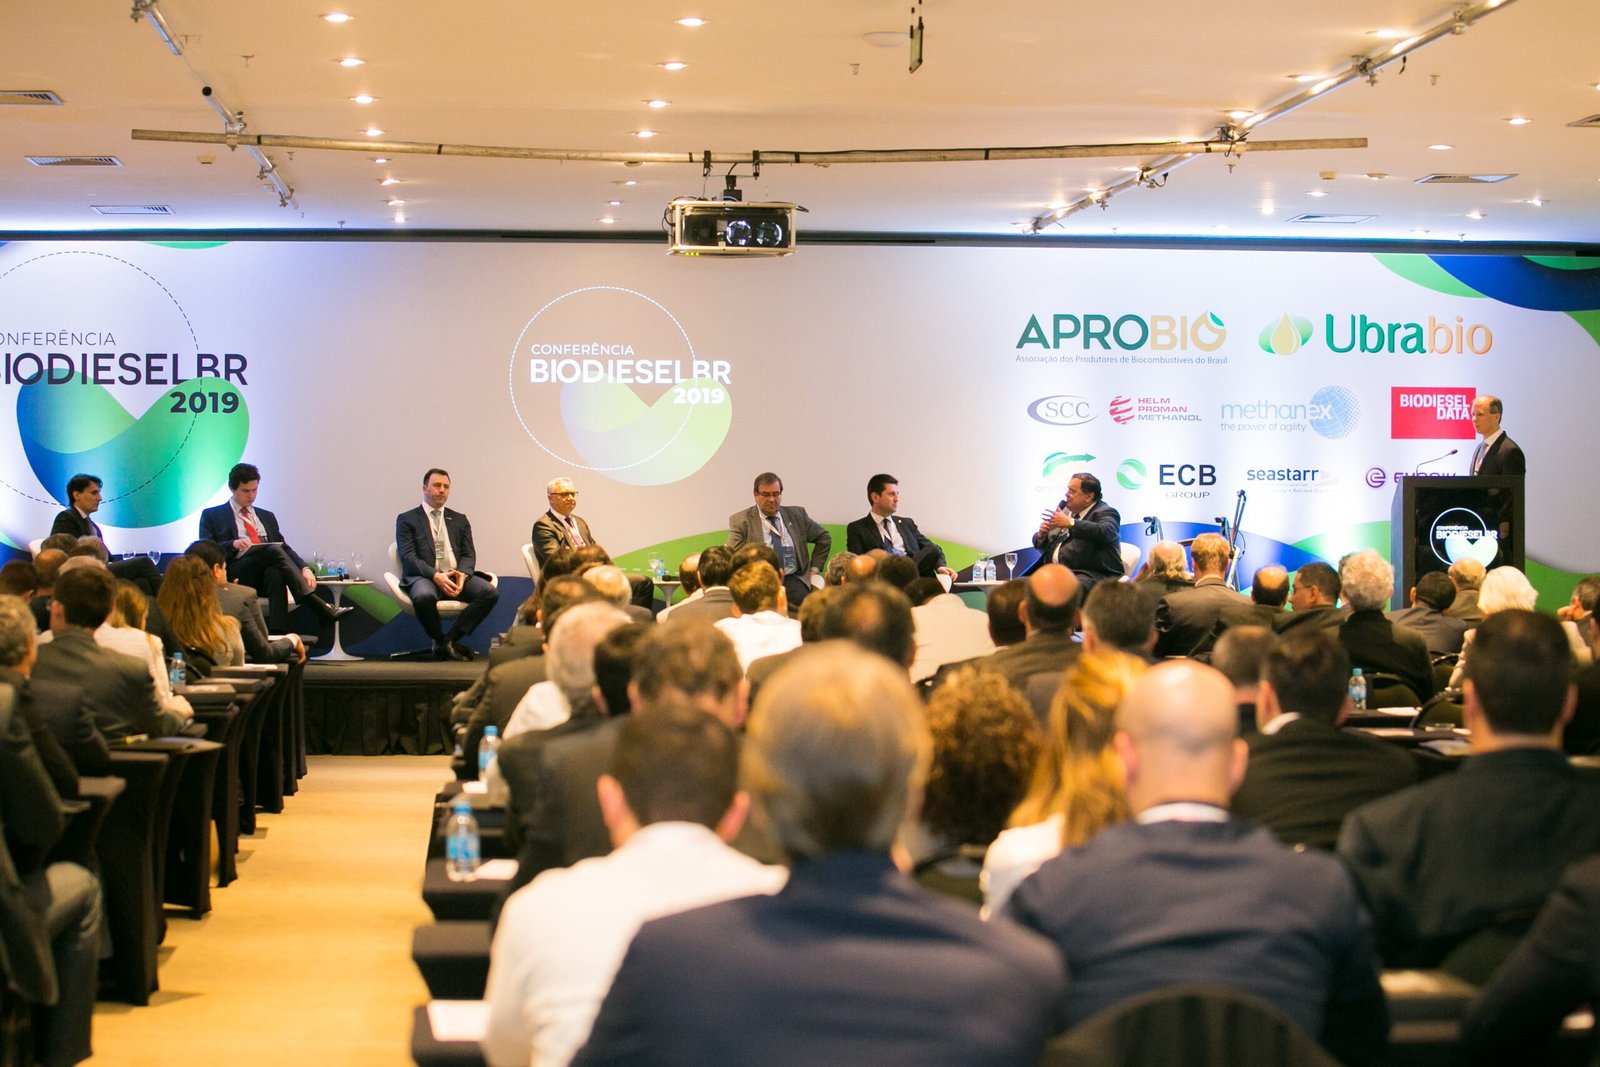 BiodieselBR promete traçar os próximos 20 anos do biodiesel no Brasil – ABRA participa da programação!